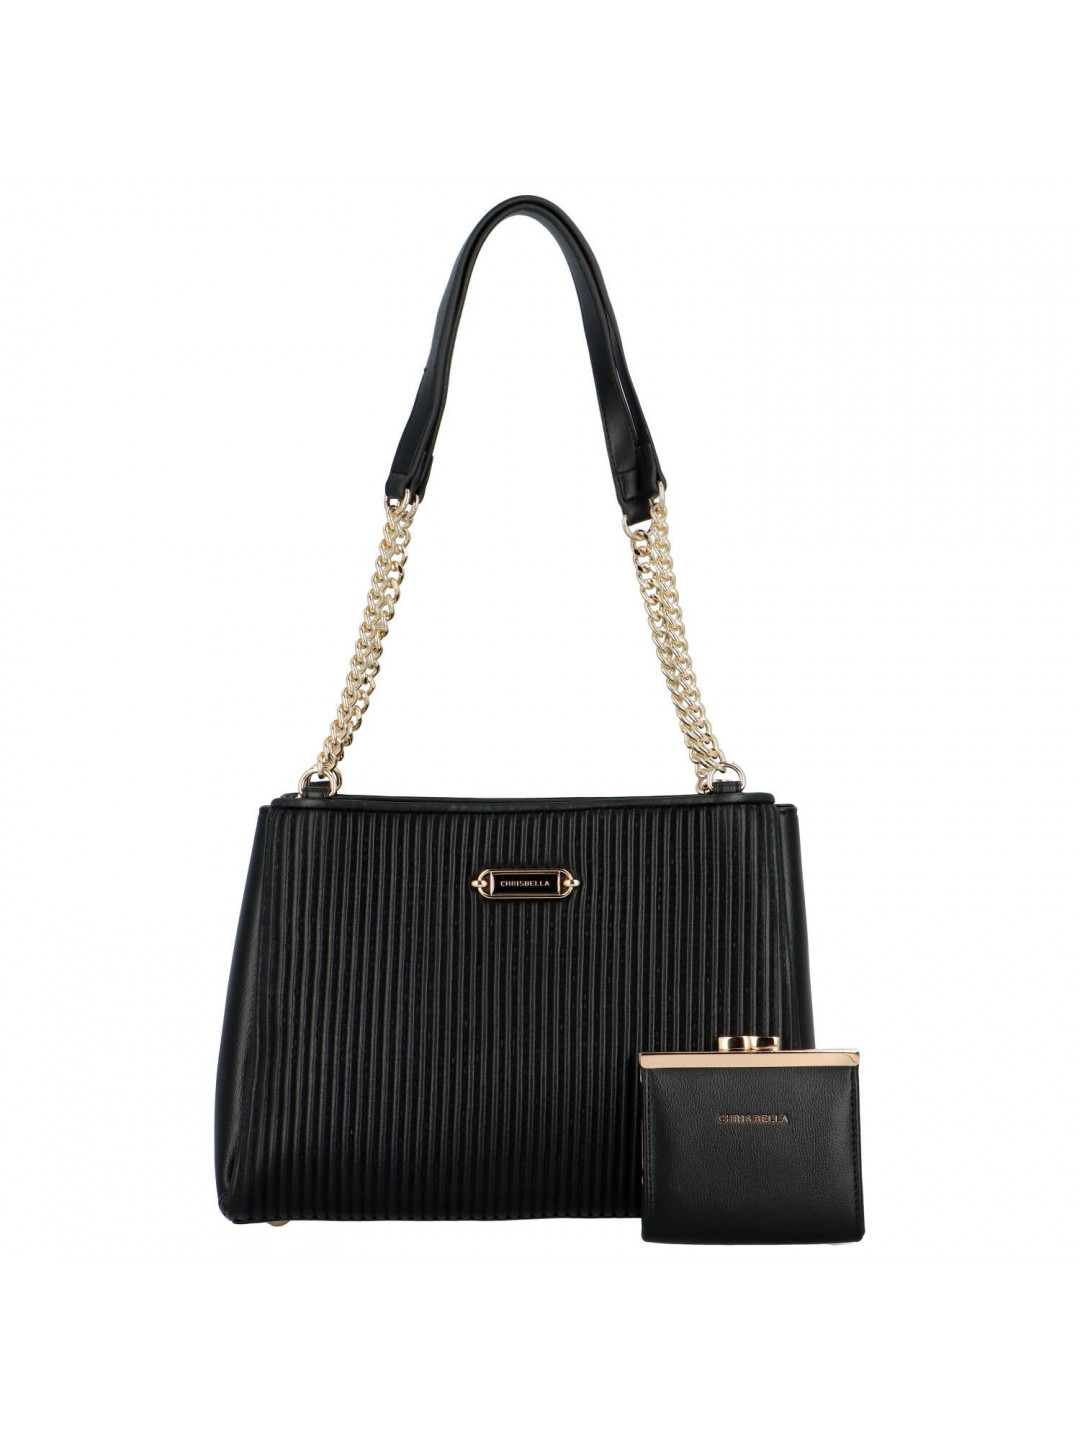 Luxusní dámská kabelka přes rameno Angelika černá